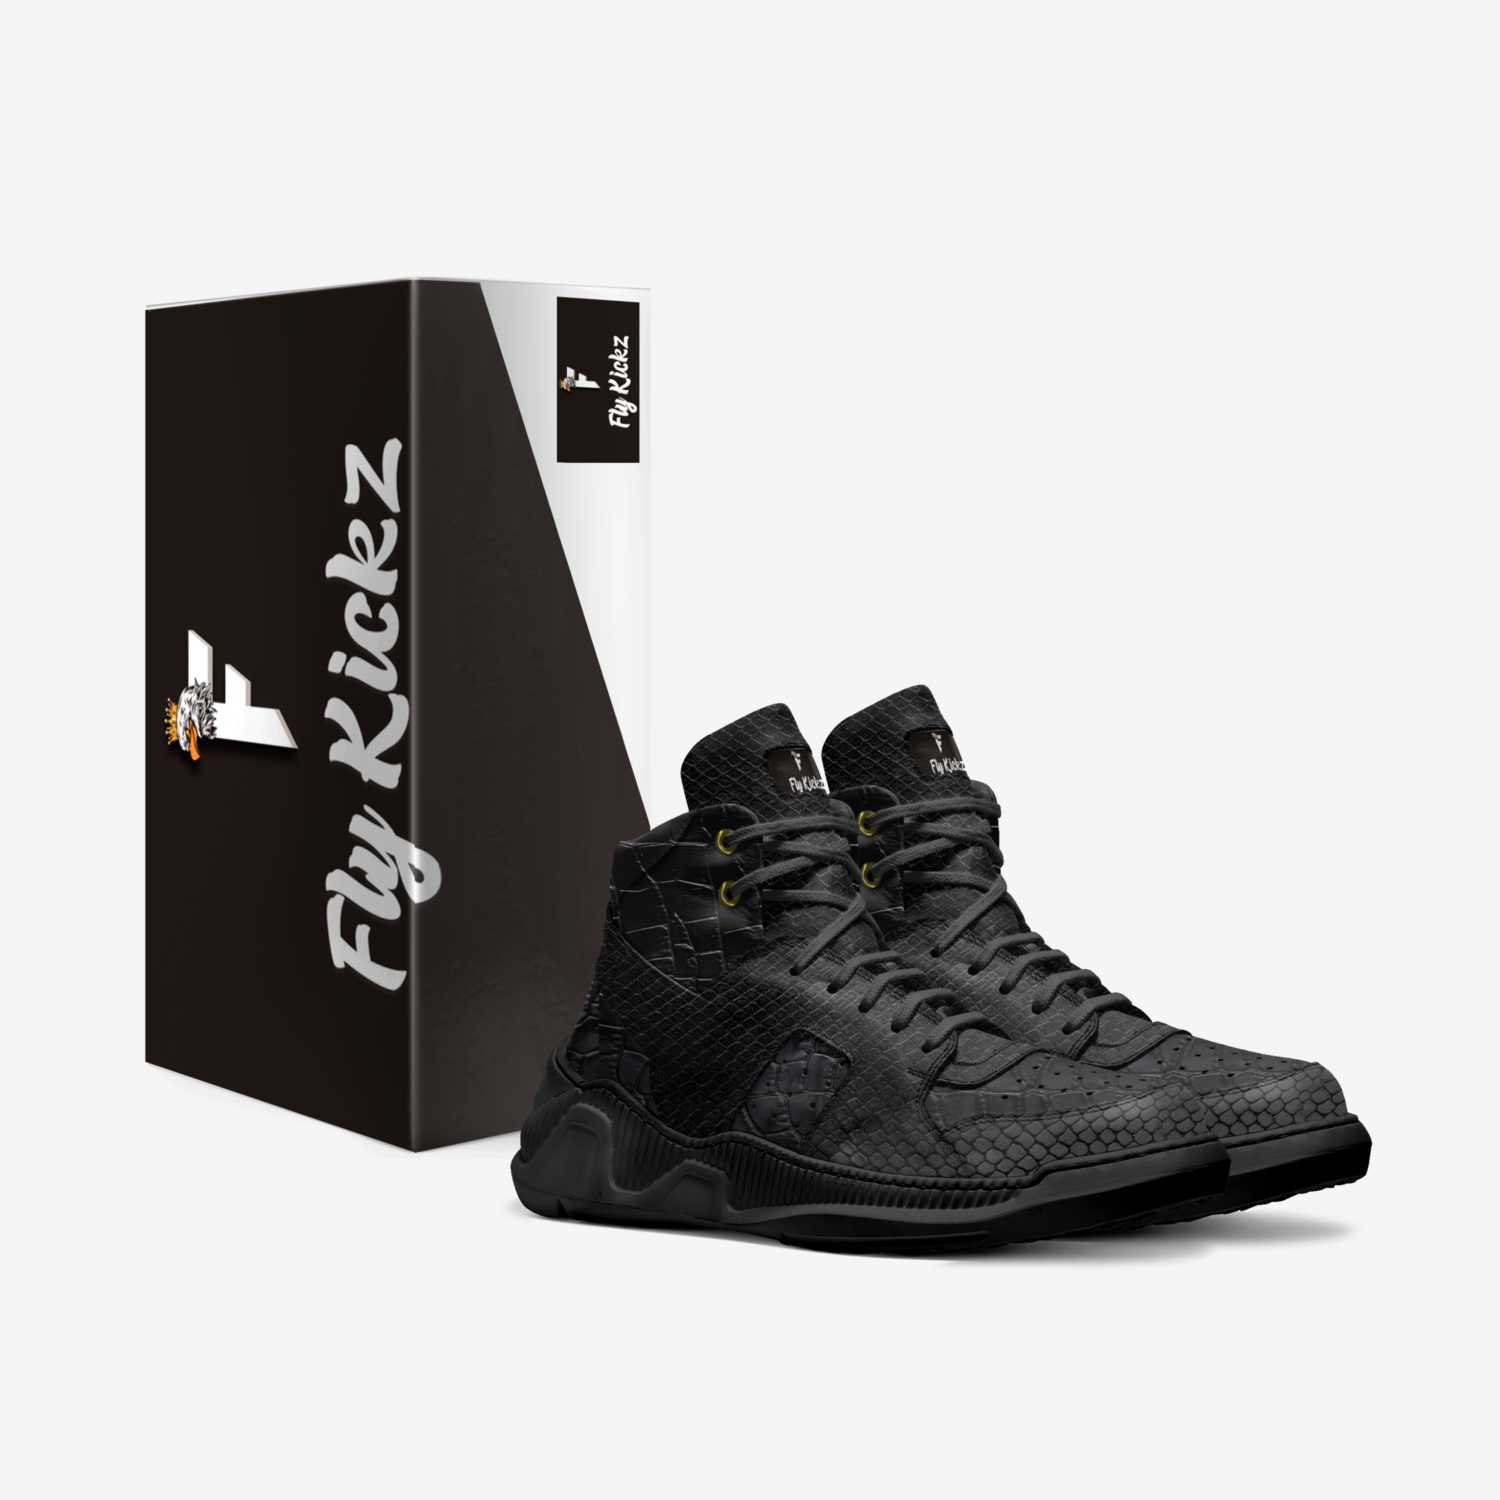 Fly kickz custom made in Italy shoes by Ricardo Shelton | Box view